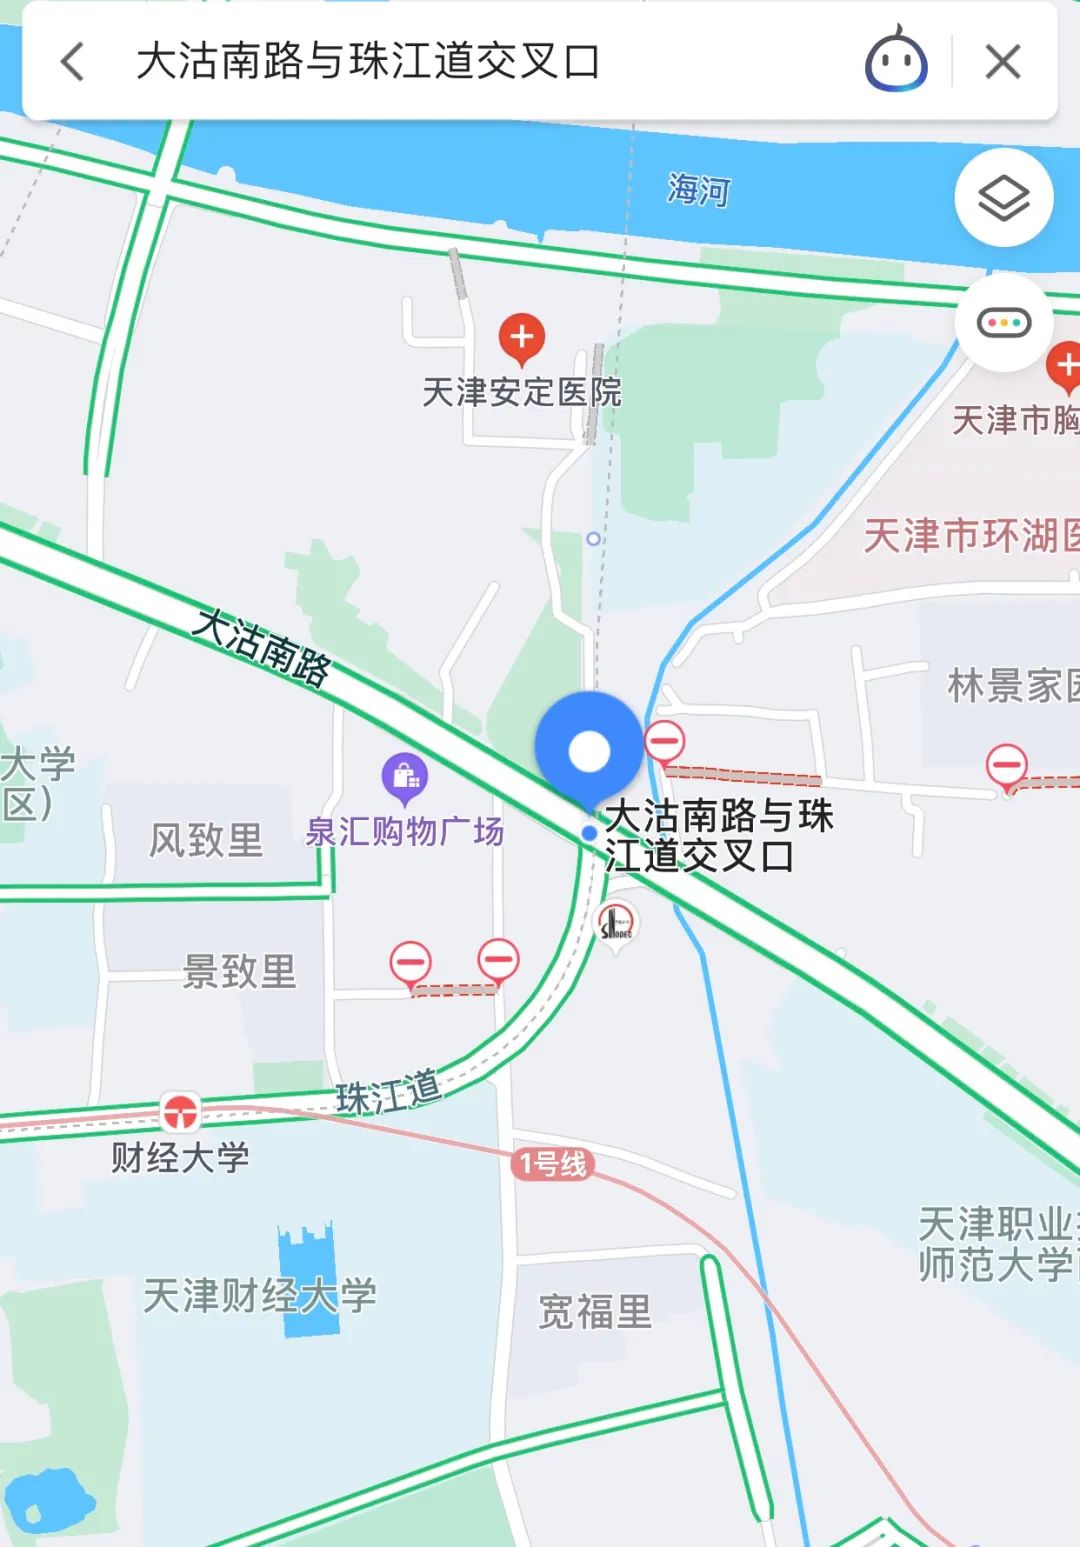 一是将大沽南路与珠江道交口东口的车道调整为一条掉头车道,二条左转